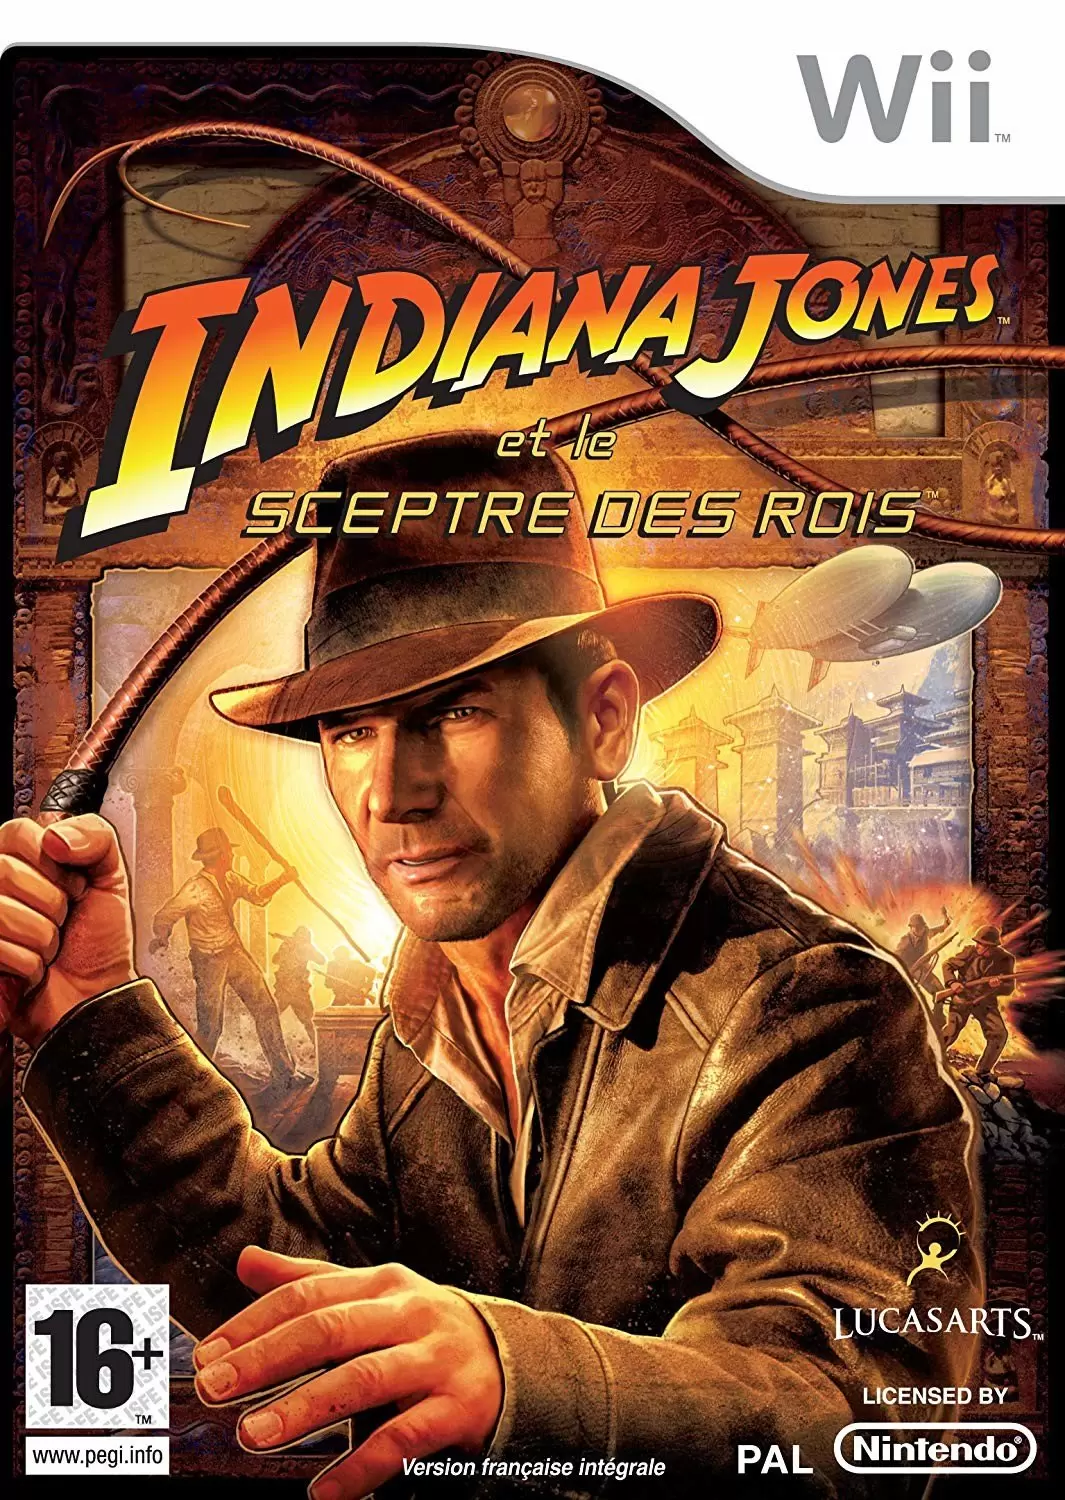 Nintendo Wii Games - Indiana Jones Et Le Sceptre Des Rois